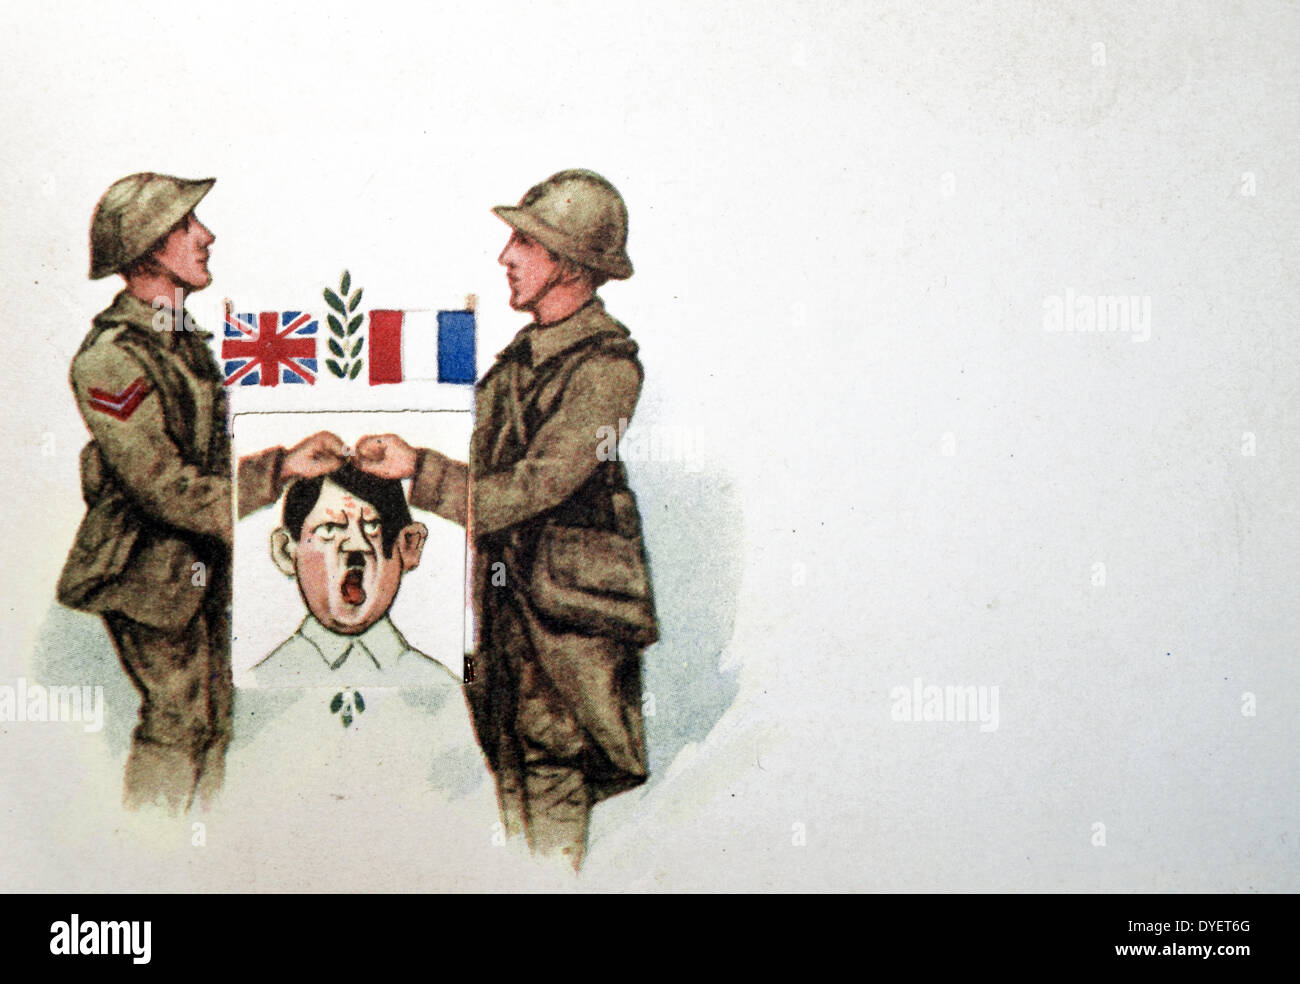 Le Français la seconde guerre mondiale carte postale avec l'encart déroulez onglet, montrant l'alliance militaire franco-anglaise, première poignée de mains et deuxièmement de frapper sur la tête d'Adolf Hitler Banque D'Images